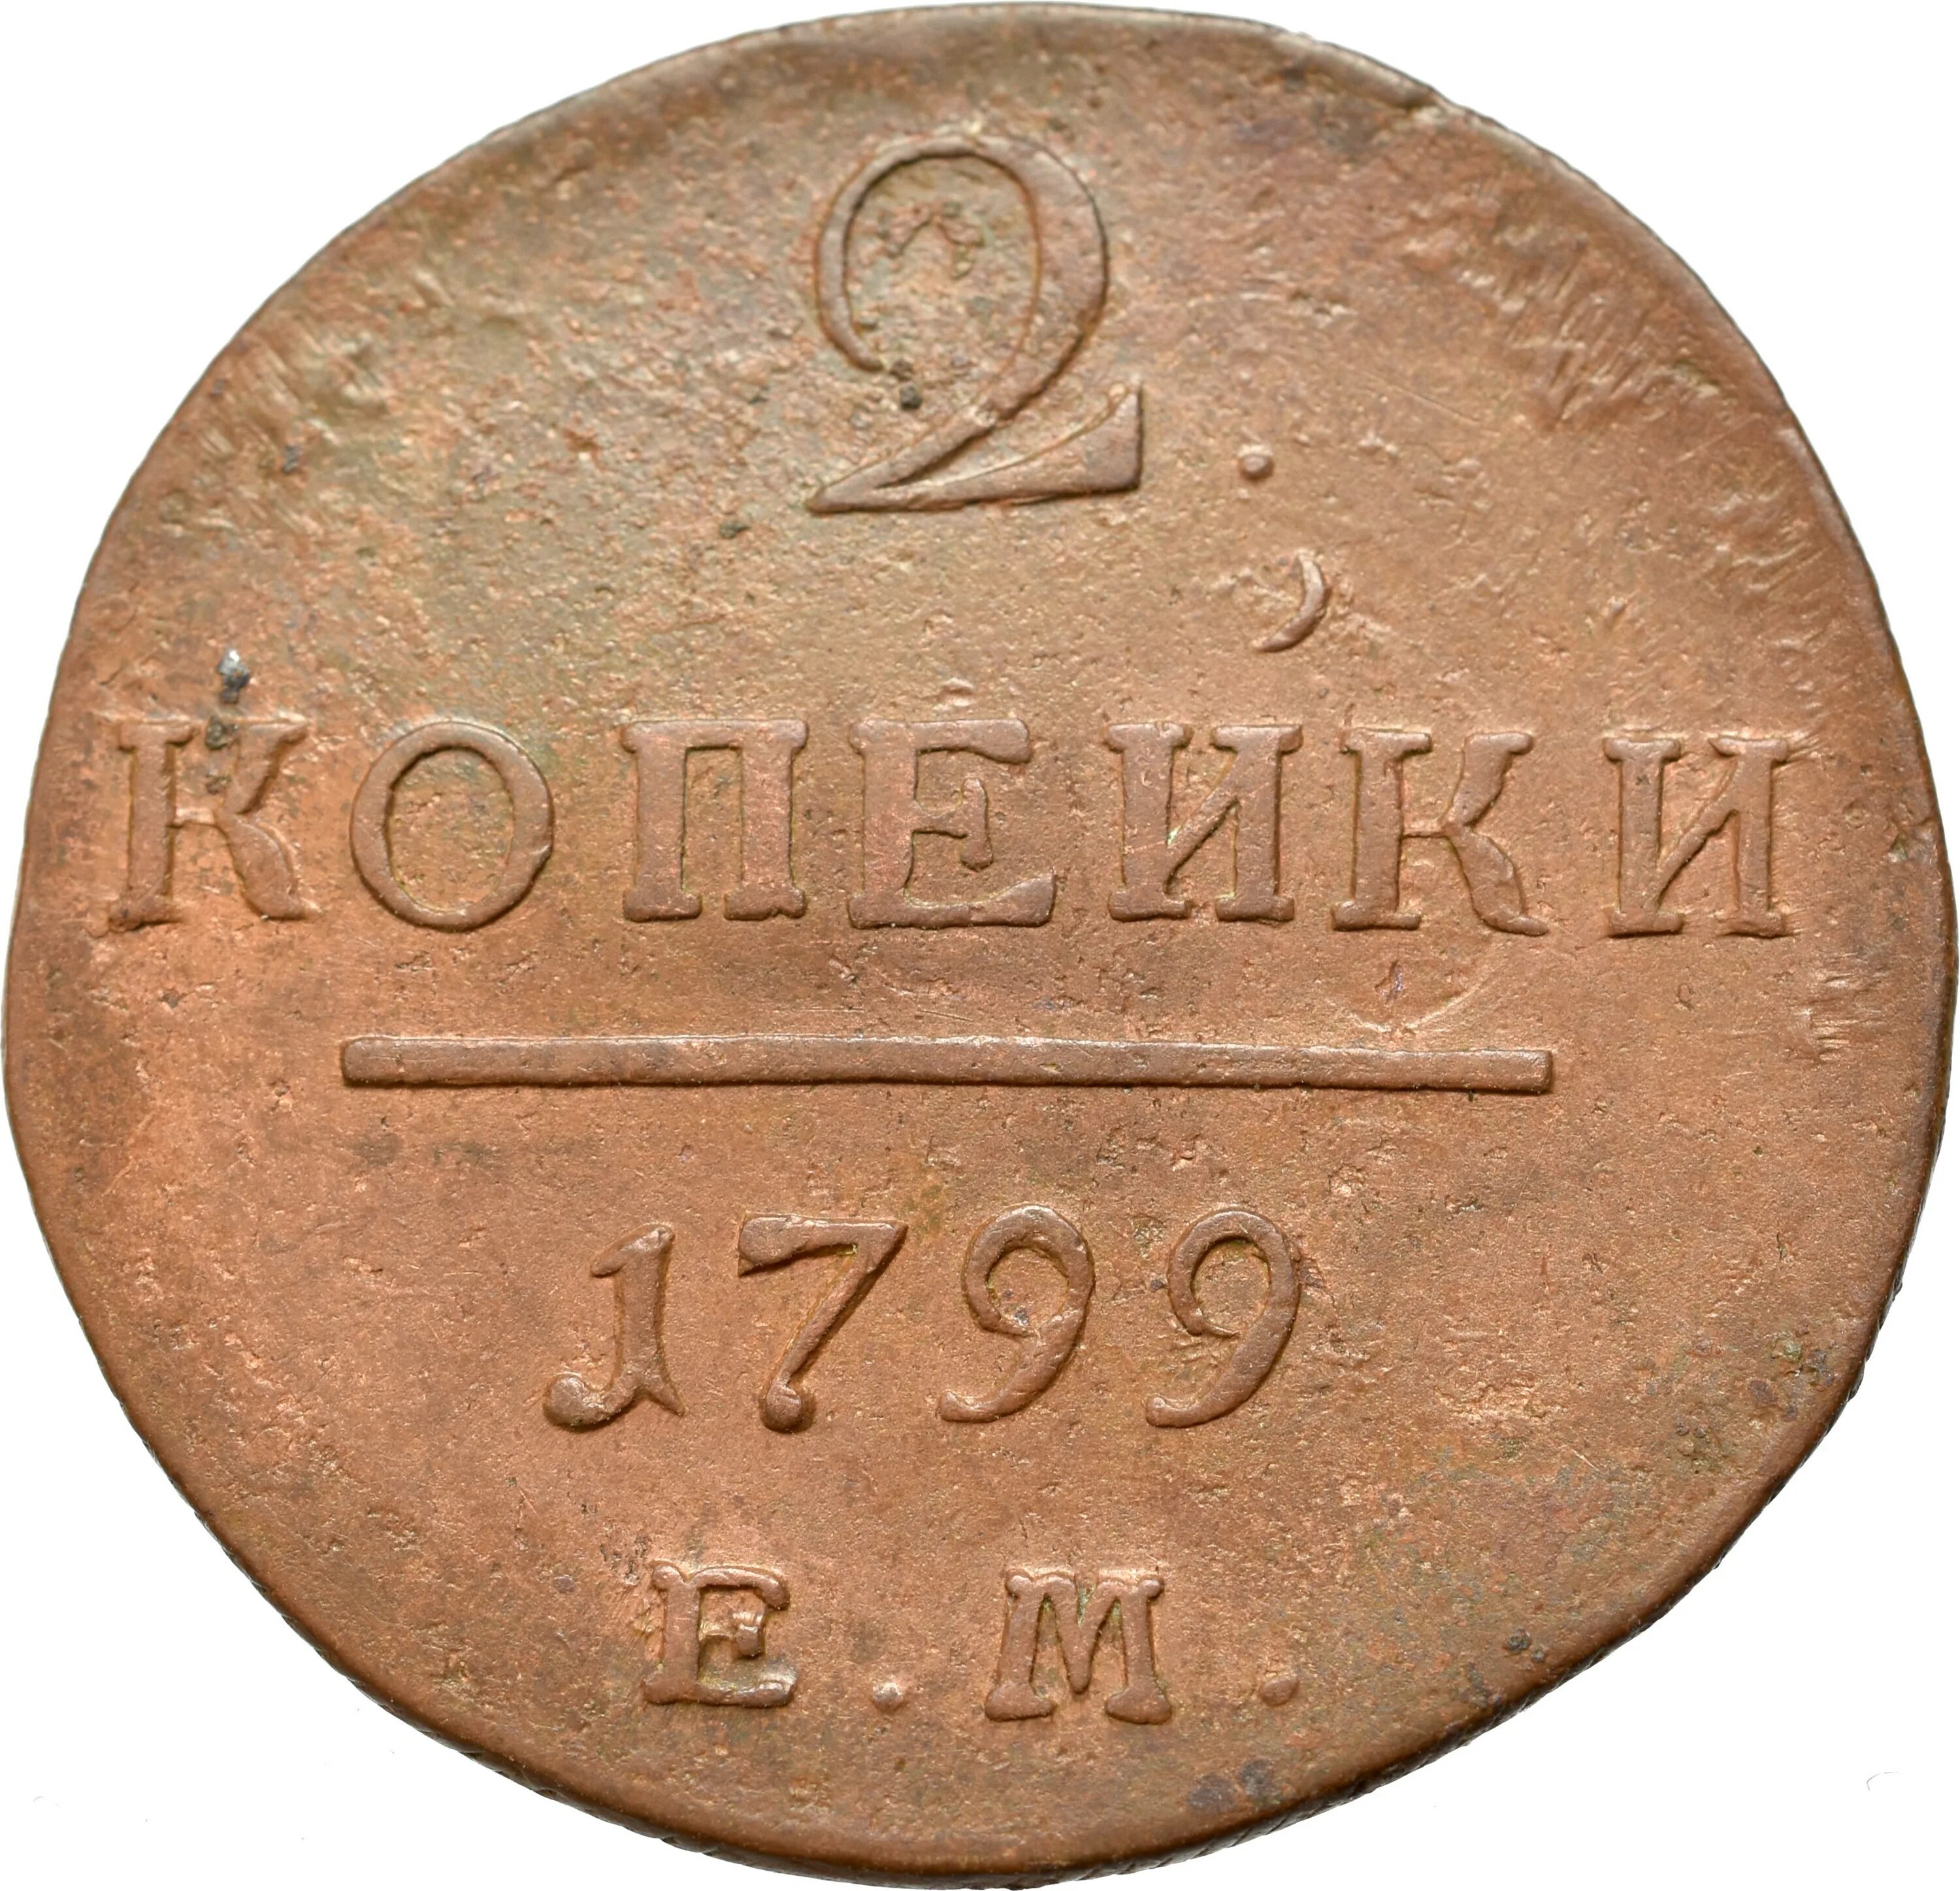 Деньги 1800. Копейка Петра 1 1798. Монета России 1 копейка 1798 года. Монеты 1800.